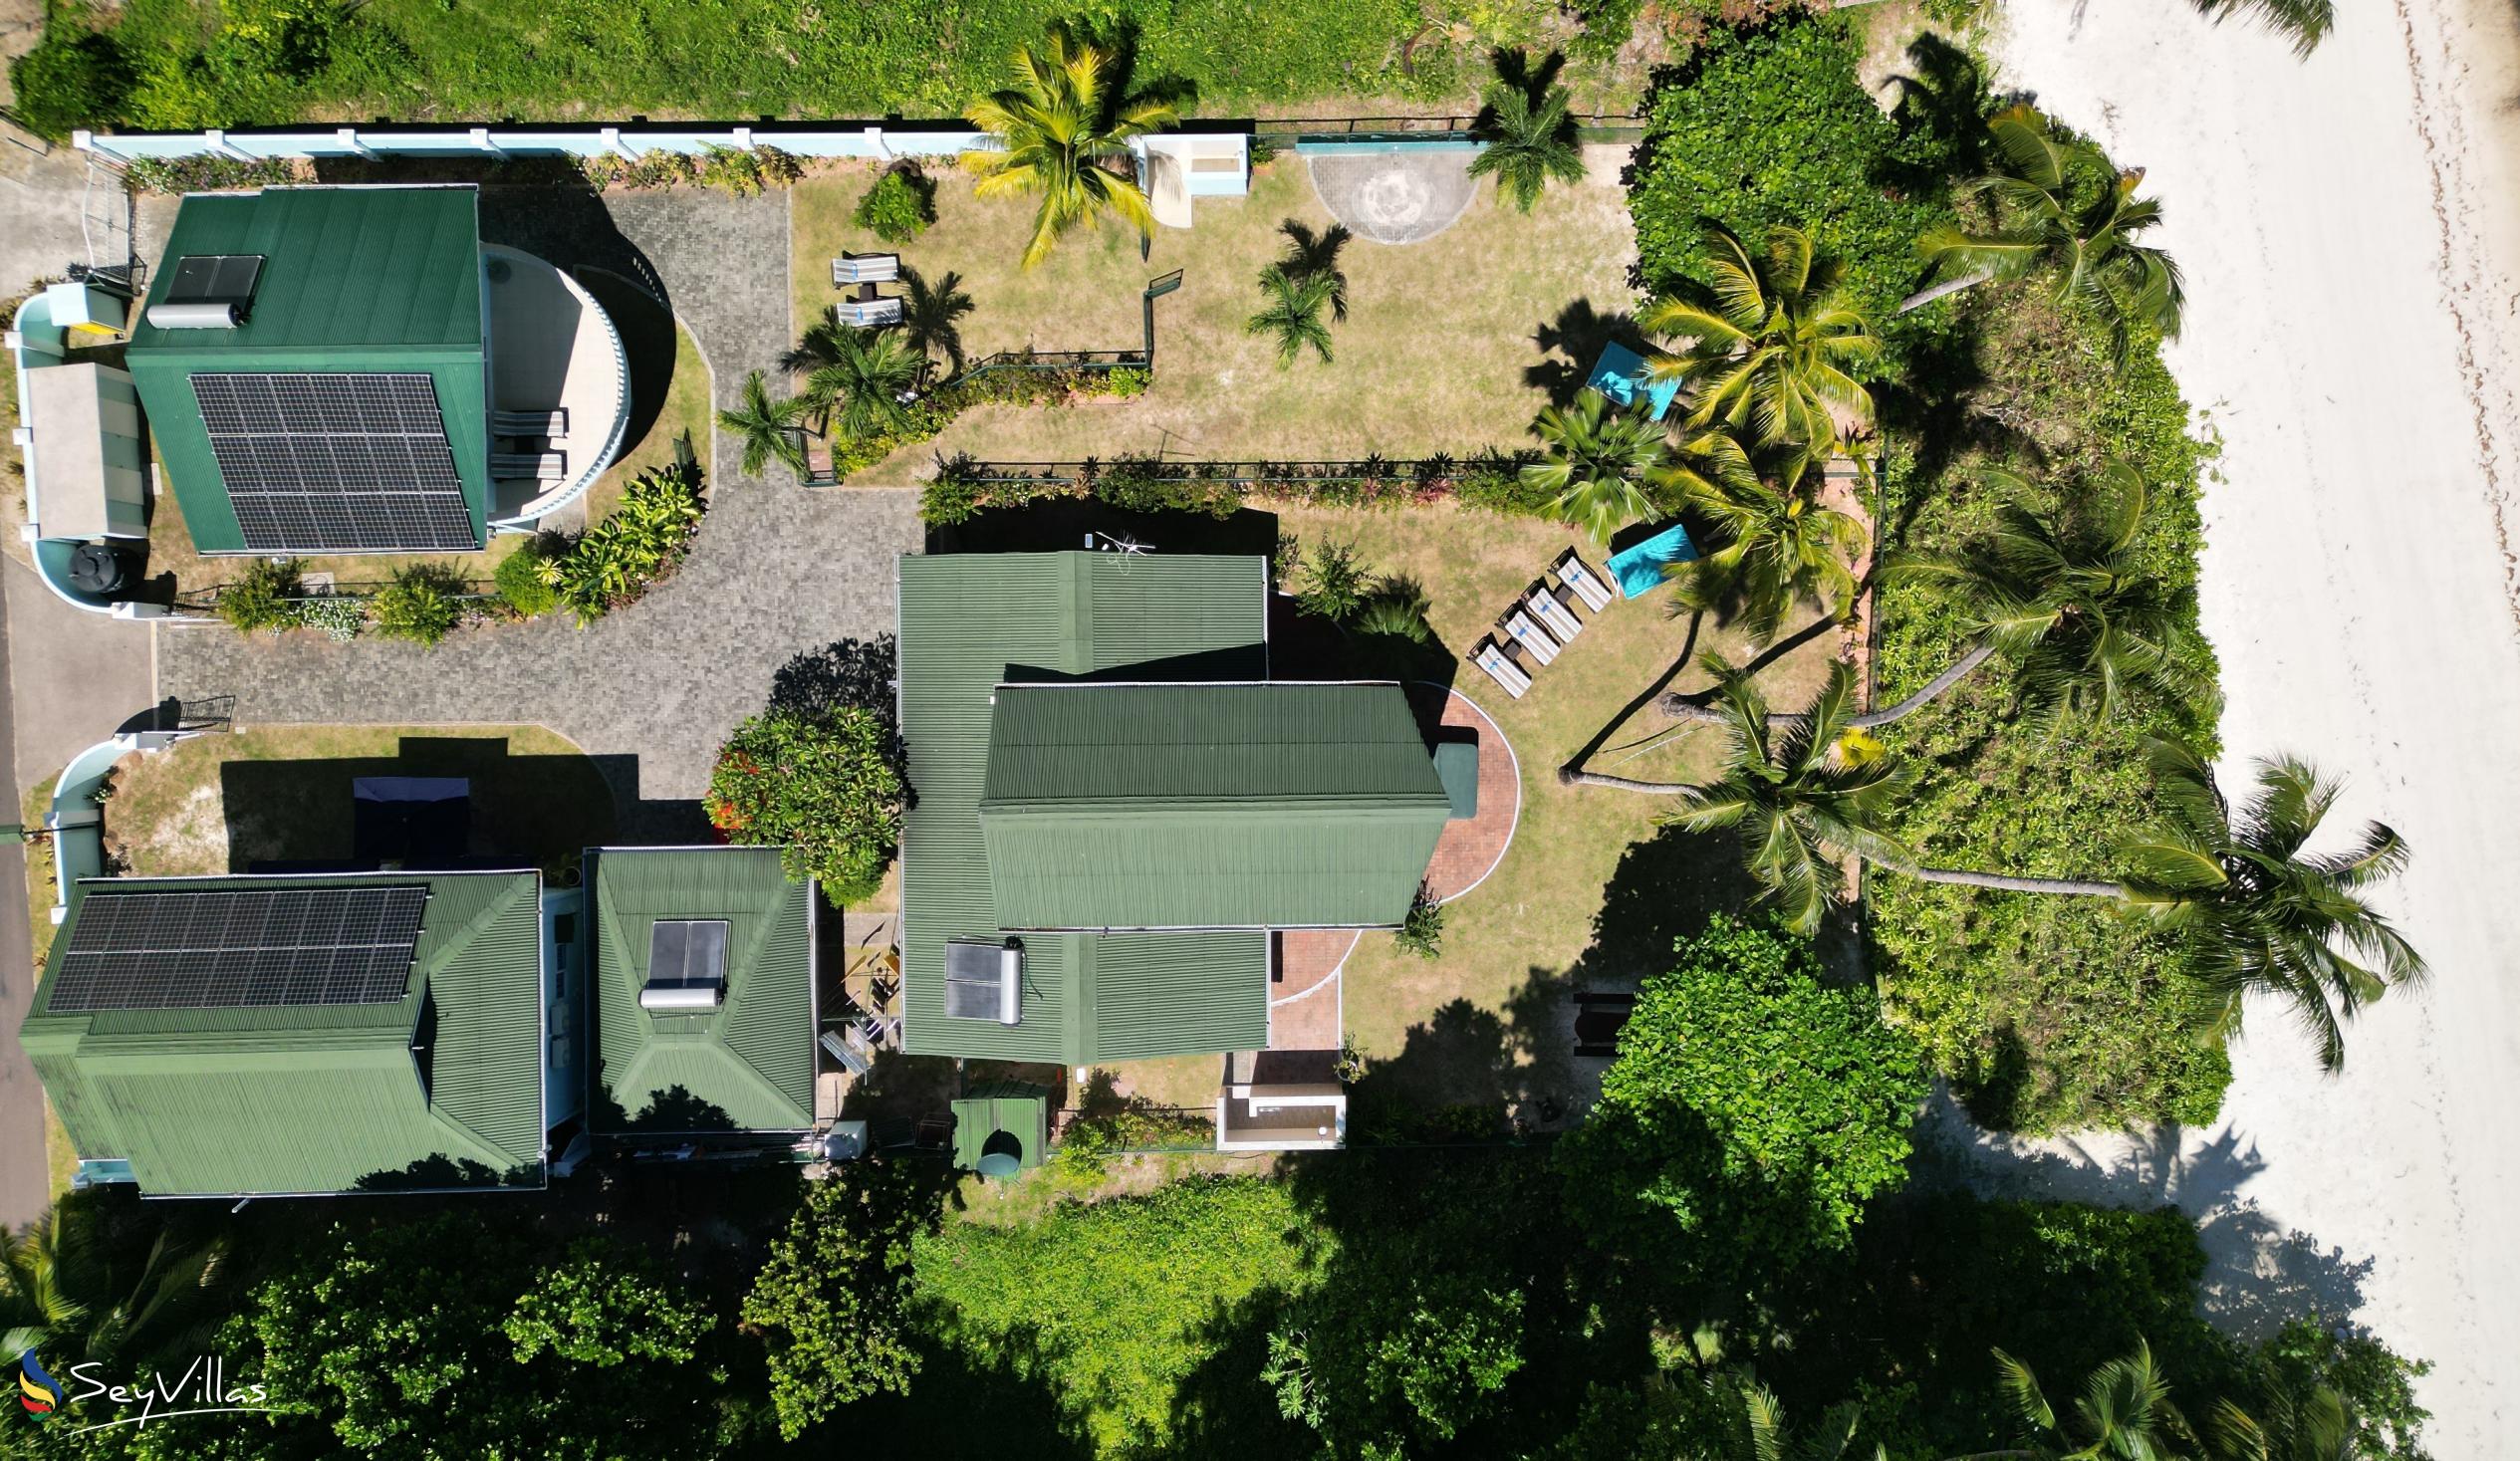 Foto 4: Ocean Villa - Aussenbereich - Praslin (Seychellen)